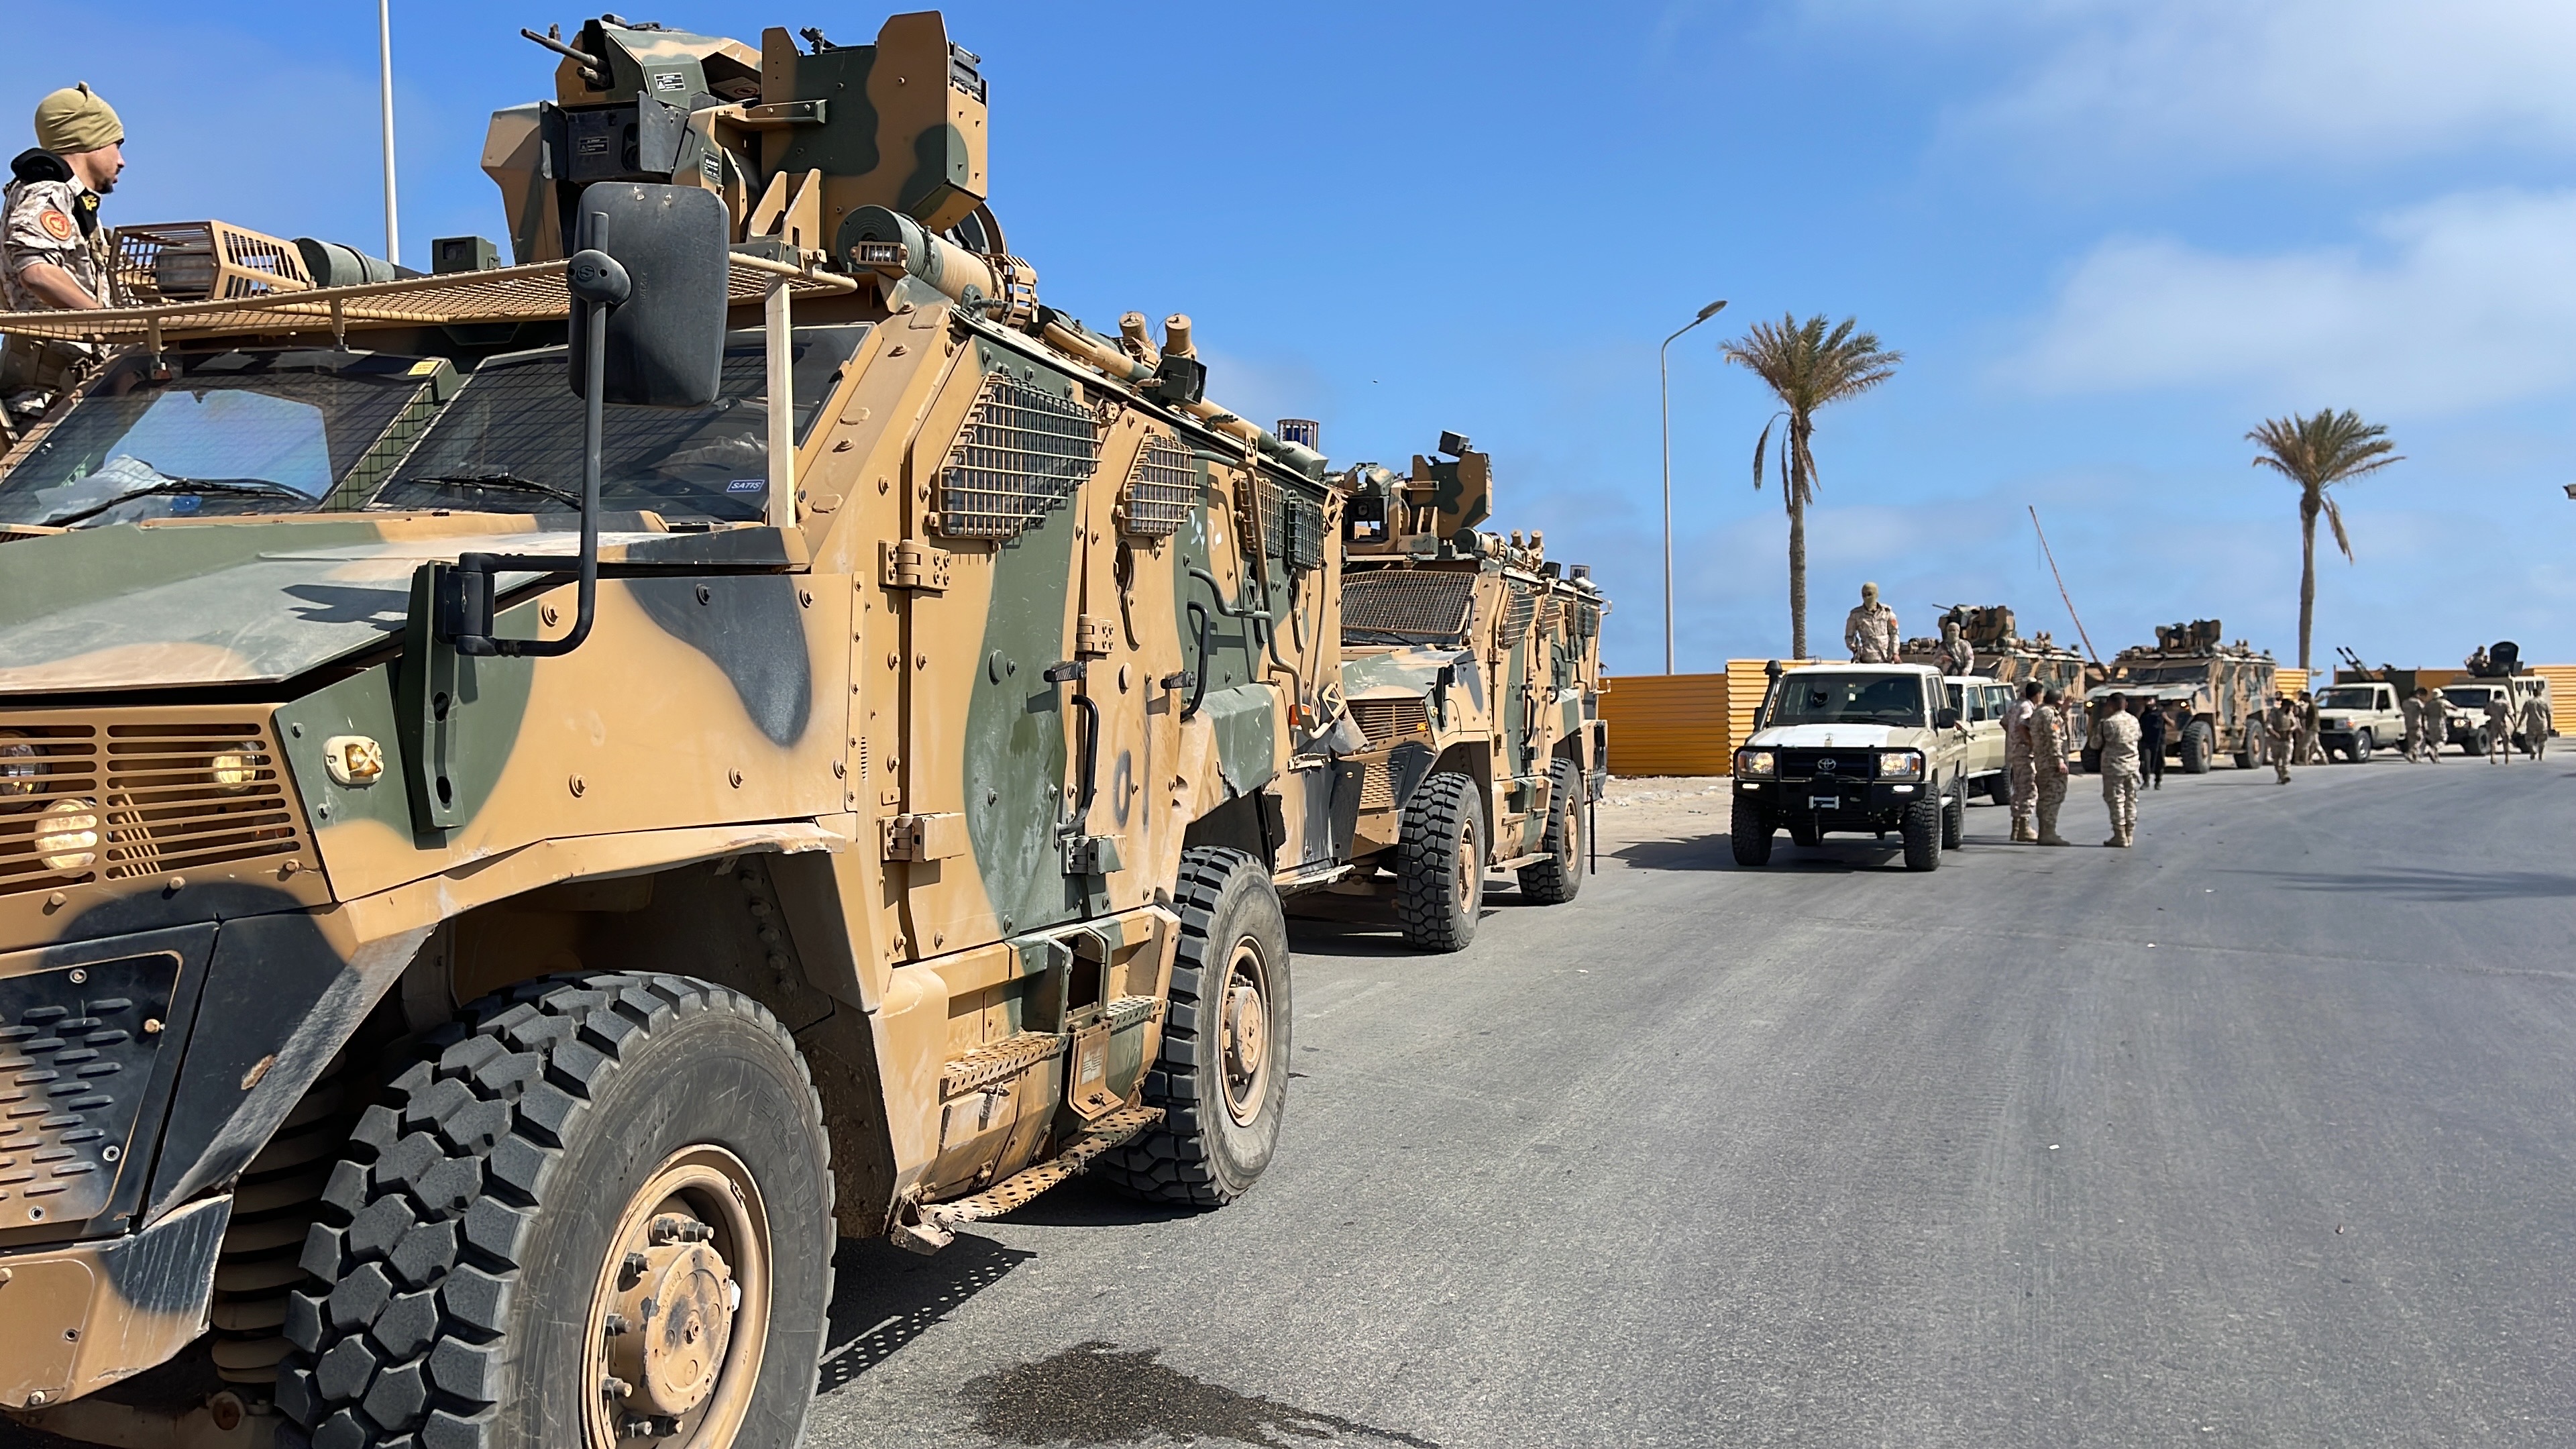 "الدفاع" الليبية: مجموعات مسلحة حاولت التسلل لطرابلس لإثارة الفوضى